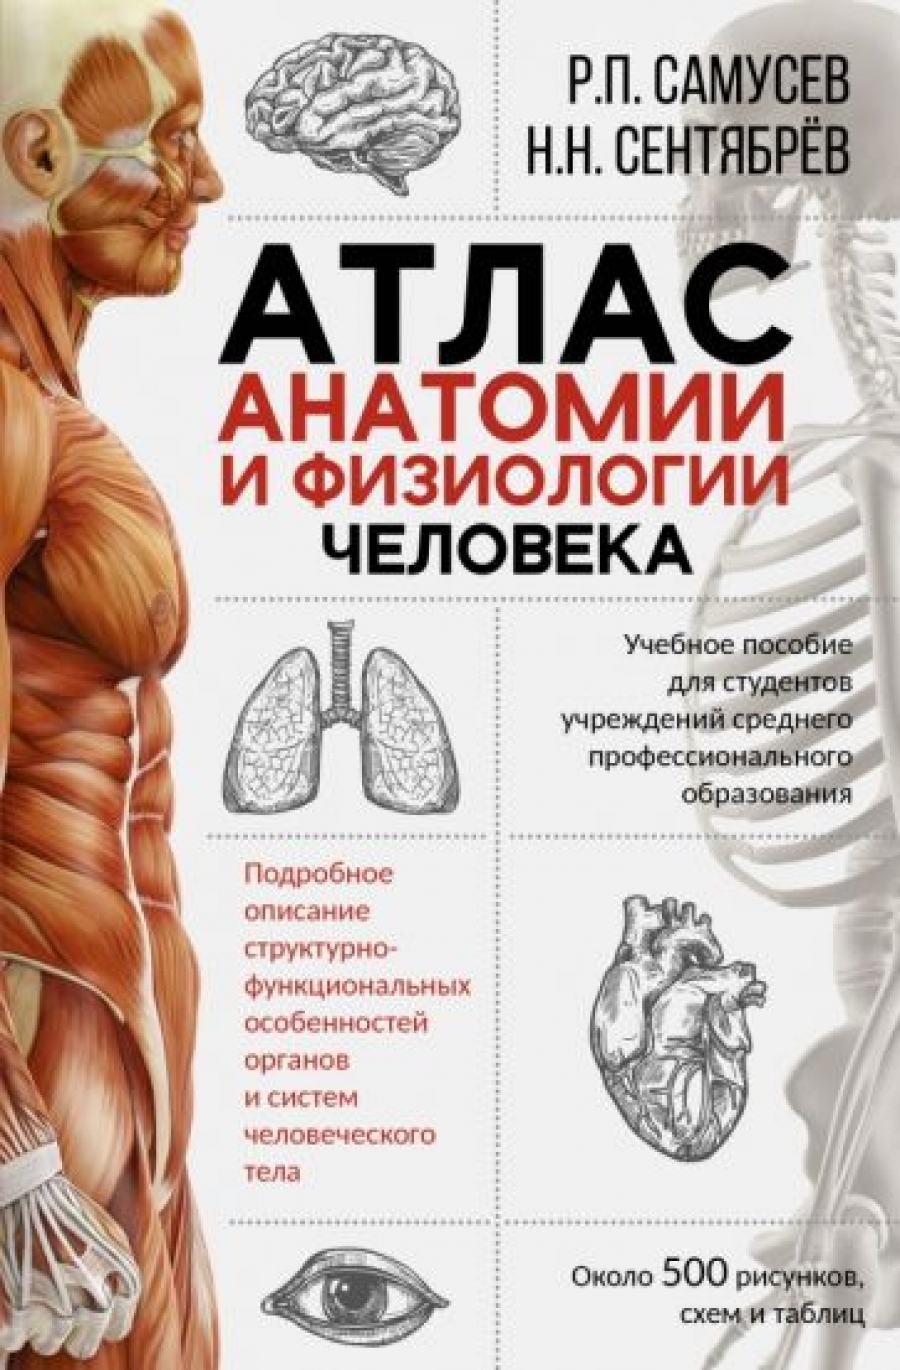 Самусев Р.П., Сентябрев Н.Н. - Атлас анатомии и физиологии человека 